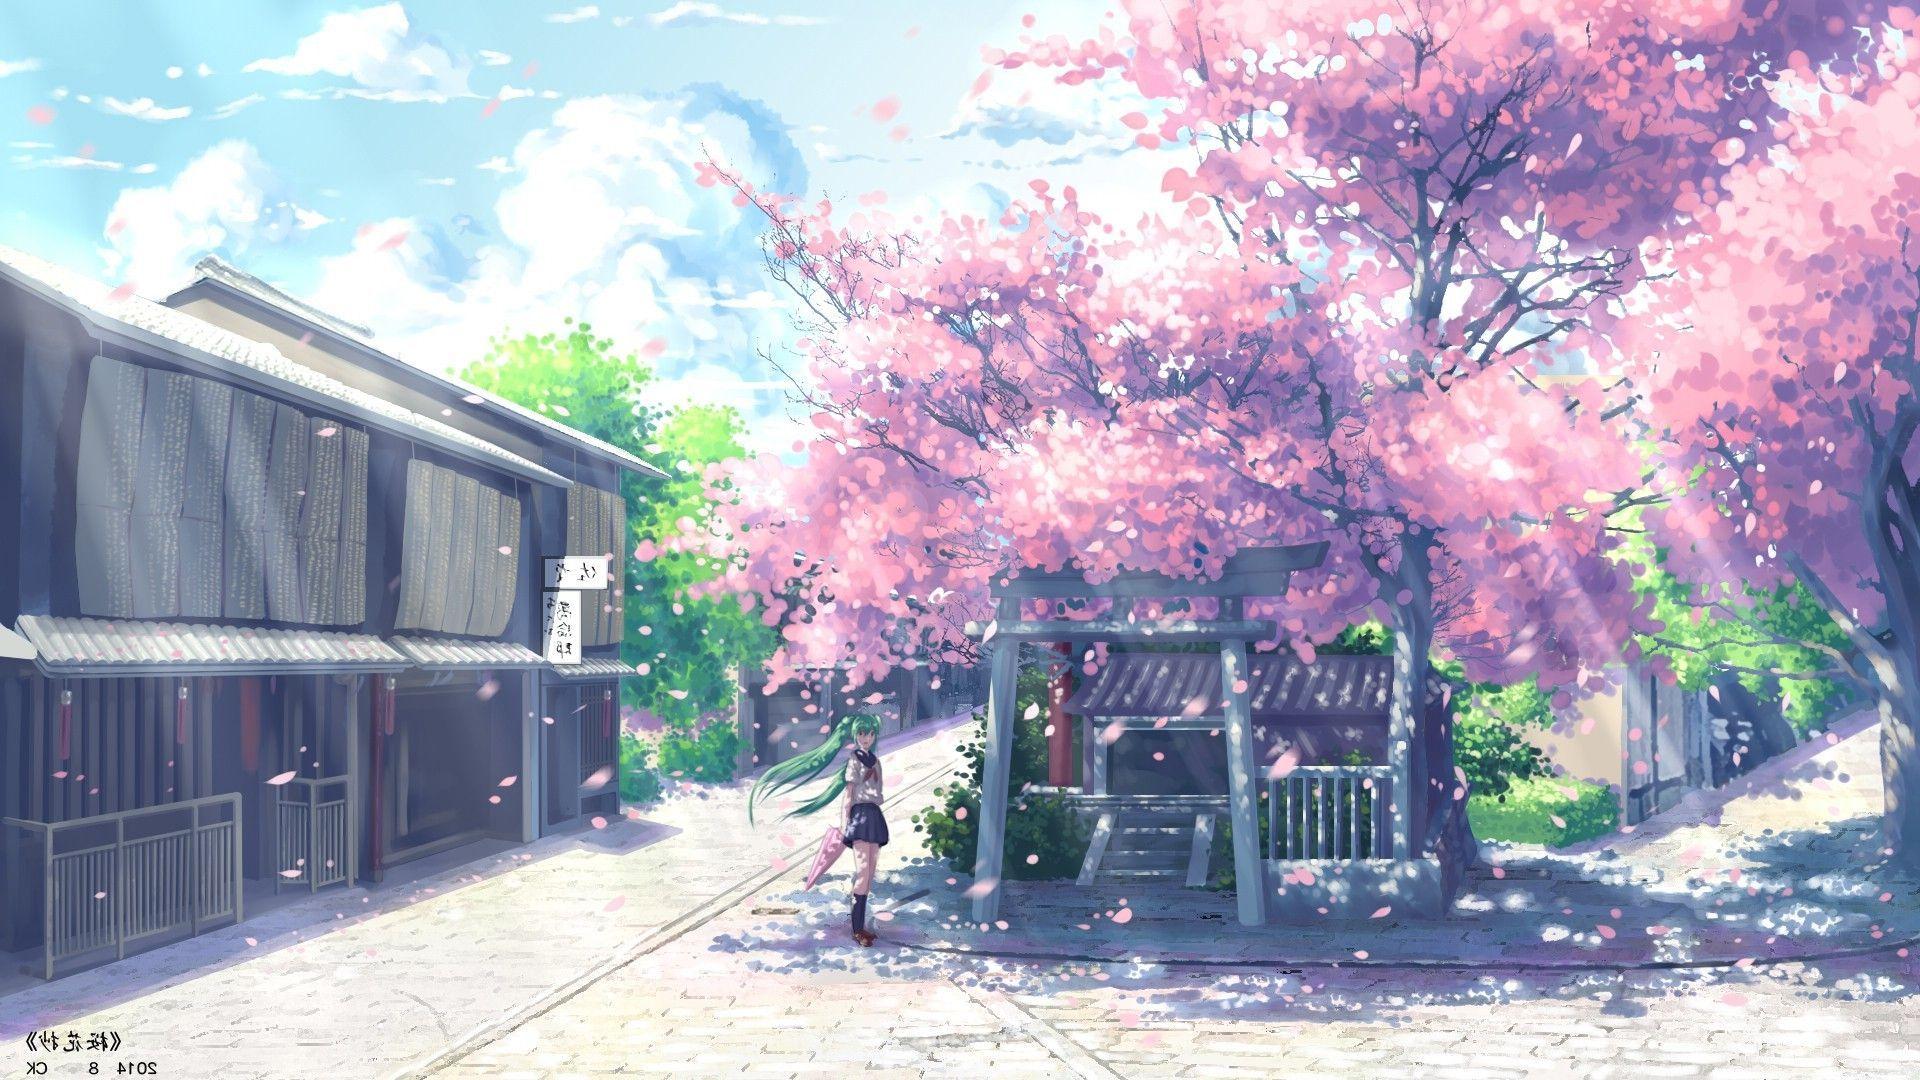 Anime desktop wallpaper on Pinterest